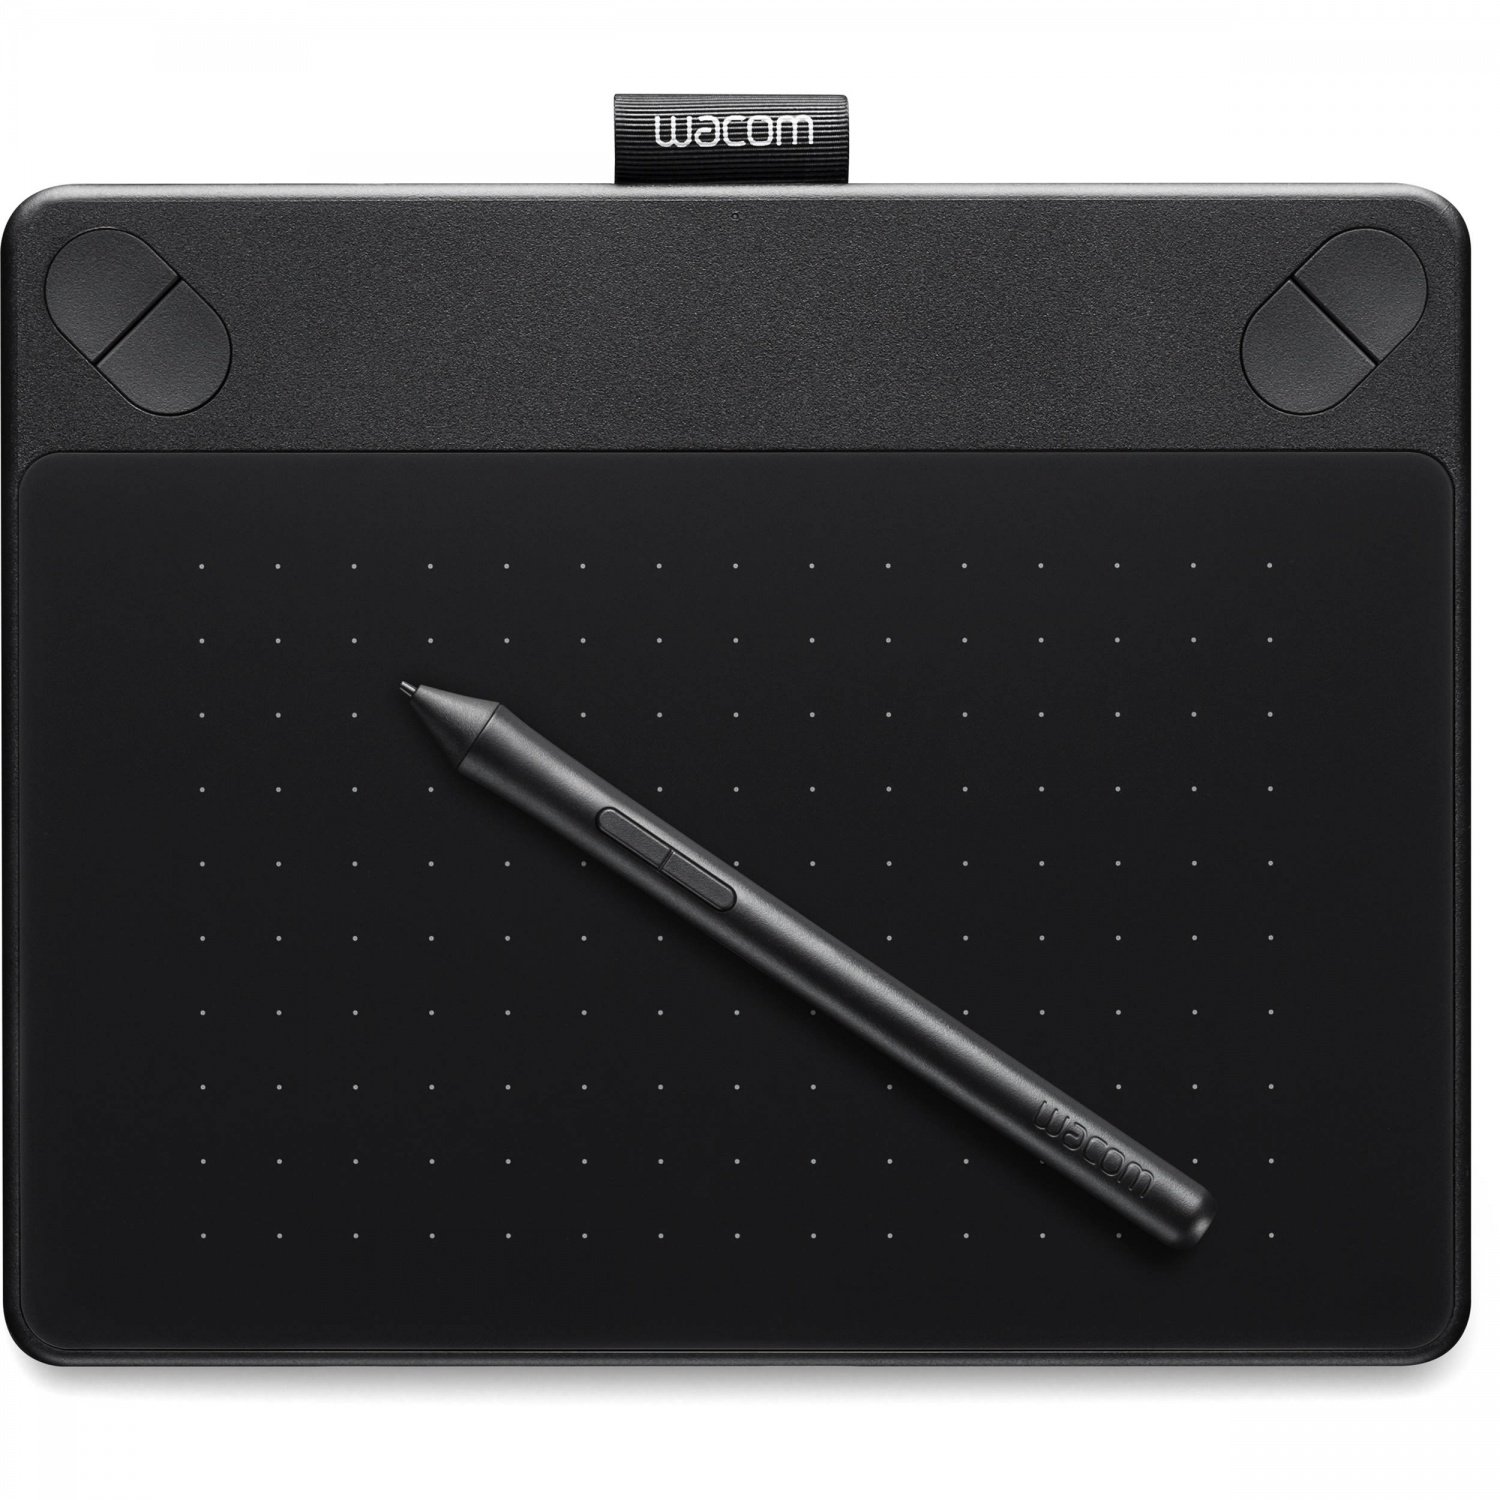 Wacom ctl s. Планшет Wacom Intuos s. Графический планшет Wacom Intuos s. Графический планшет Wacom Intuos Art. Wacom Intuos Art Creative Pen Touch Tablet.